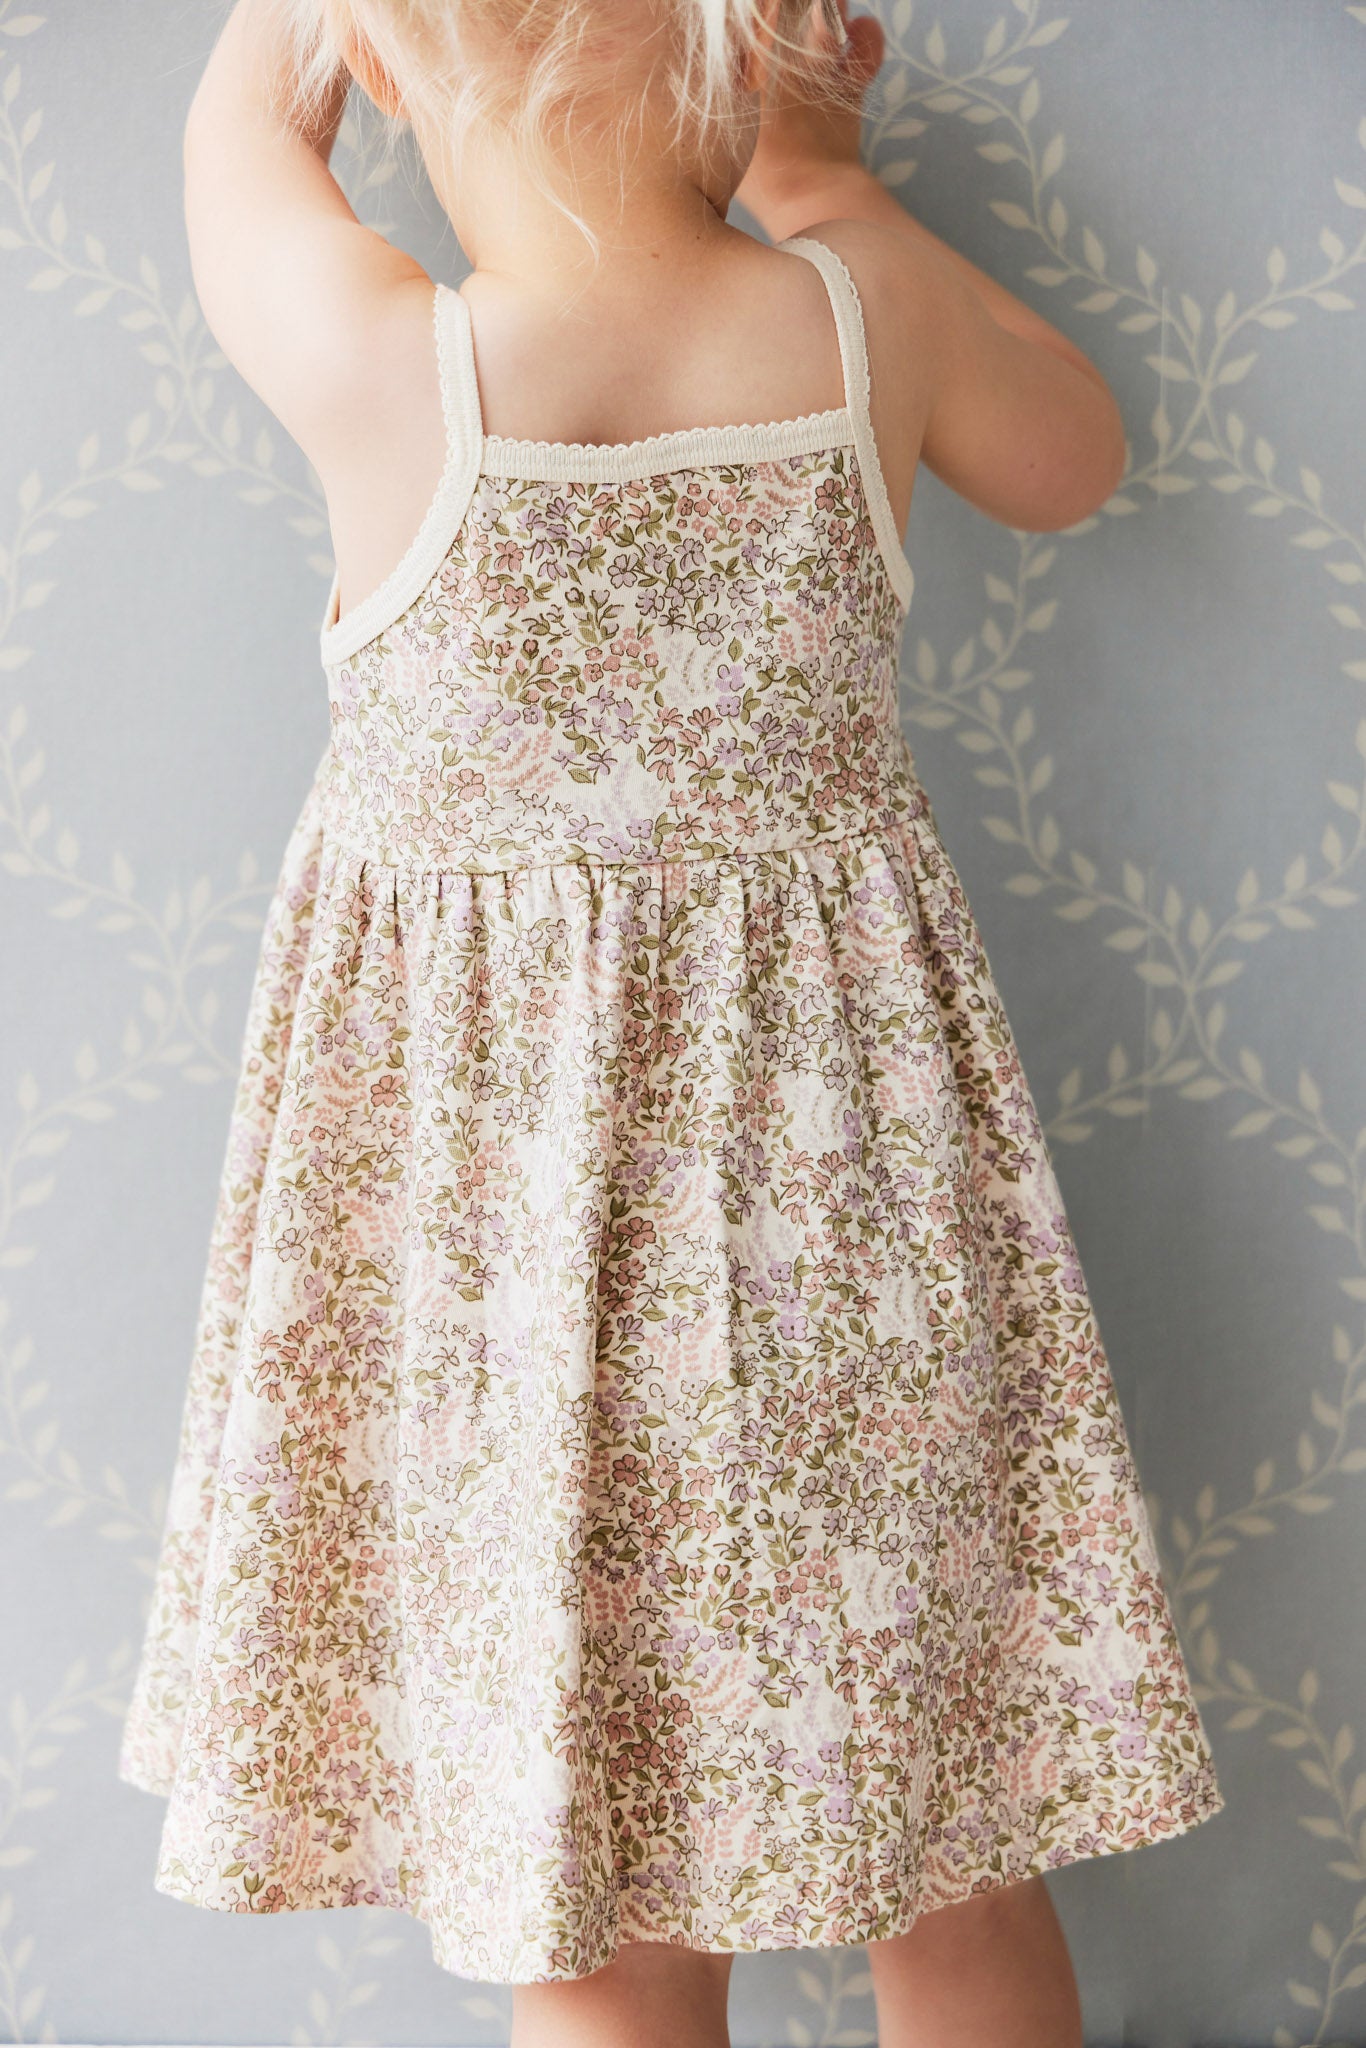 Girl summer dress